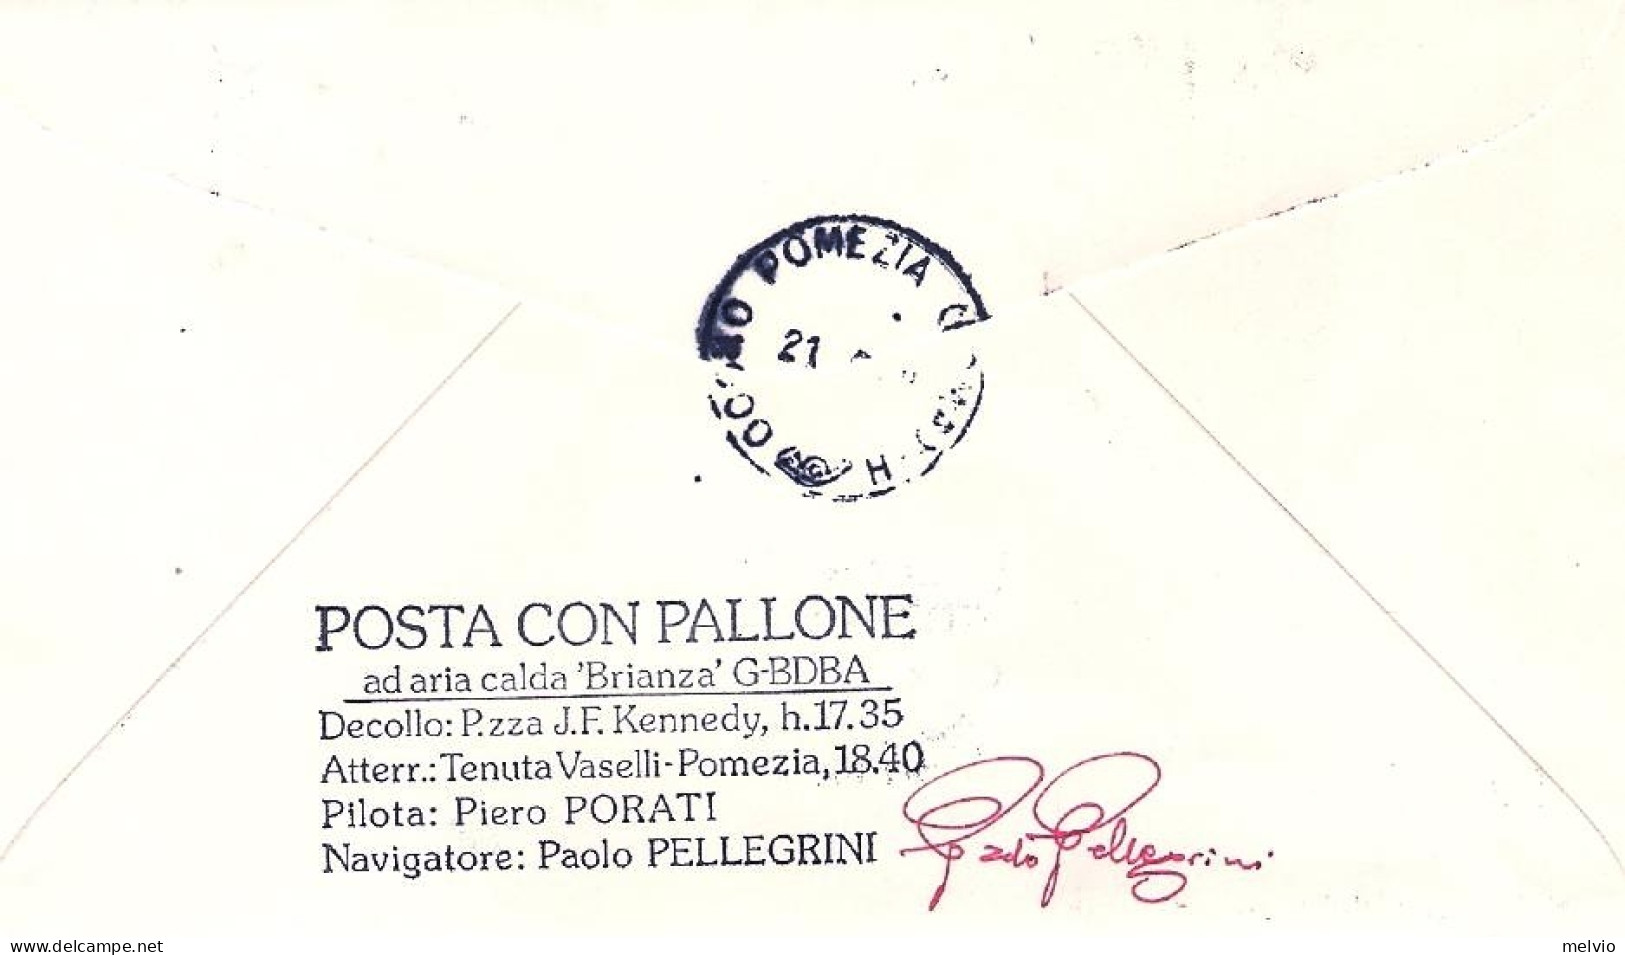 1978-Russia Volo Con Mongolfiera Per Eurphila Roma-Pomezia Al Verso Bollo "posta - Lettres & Documents